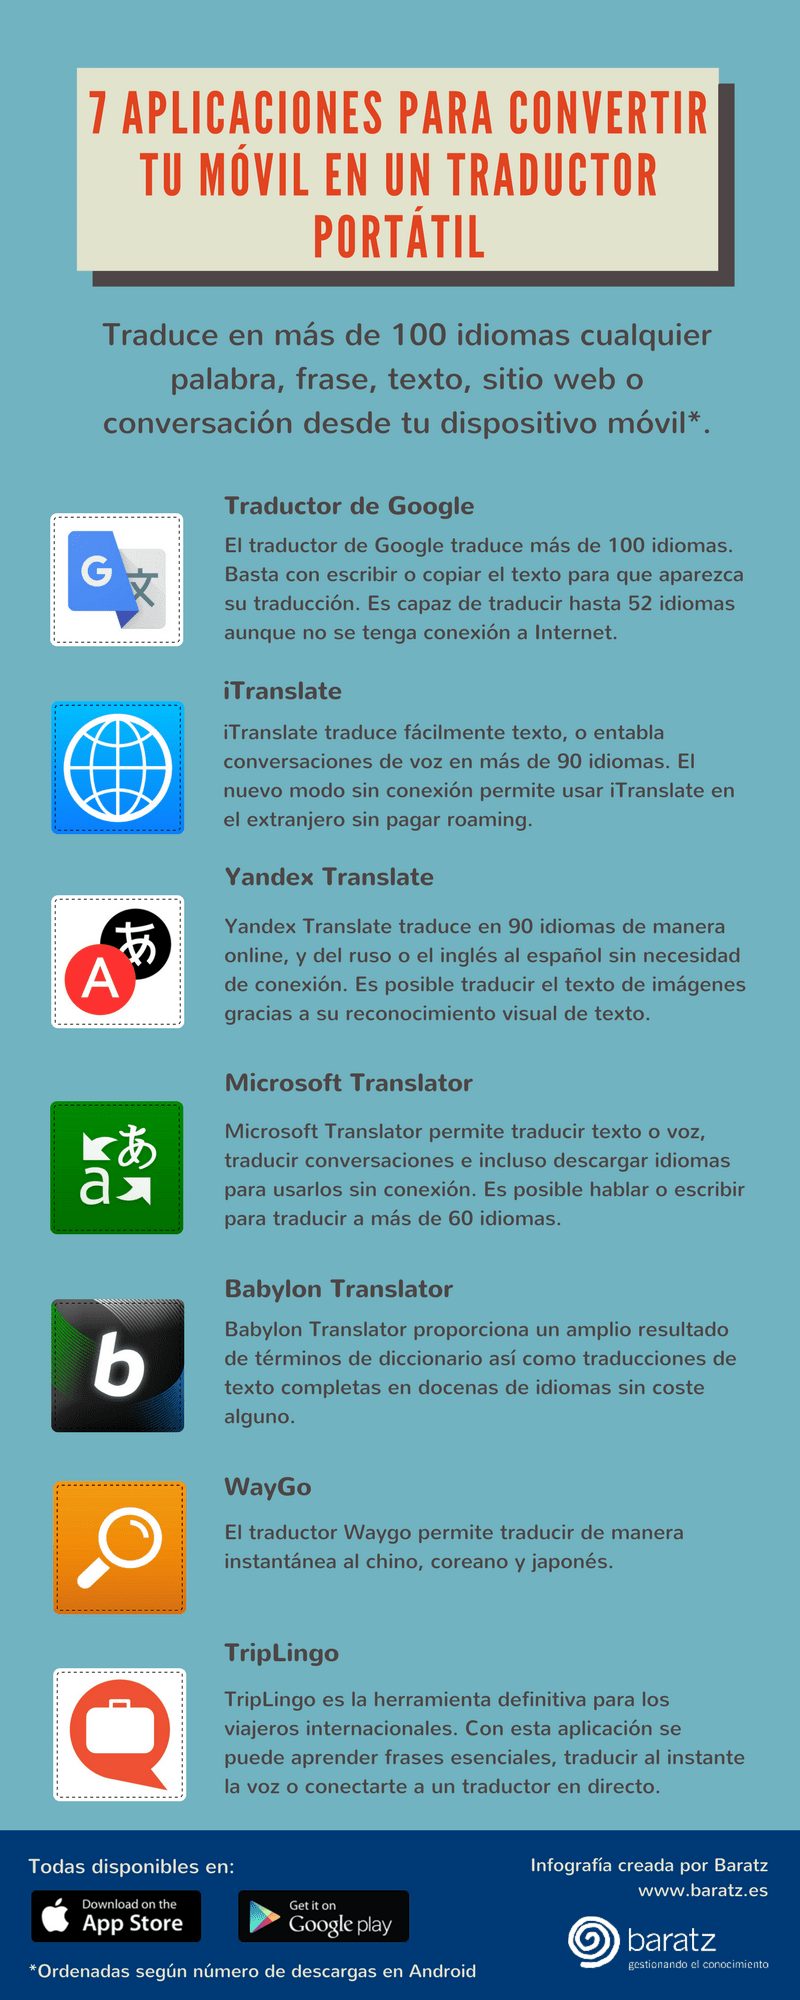 7 aplicaciones para convertir tu móvil en un traductor portátil